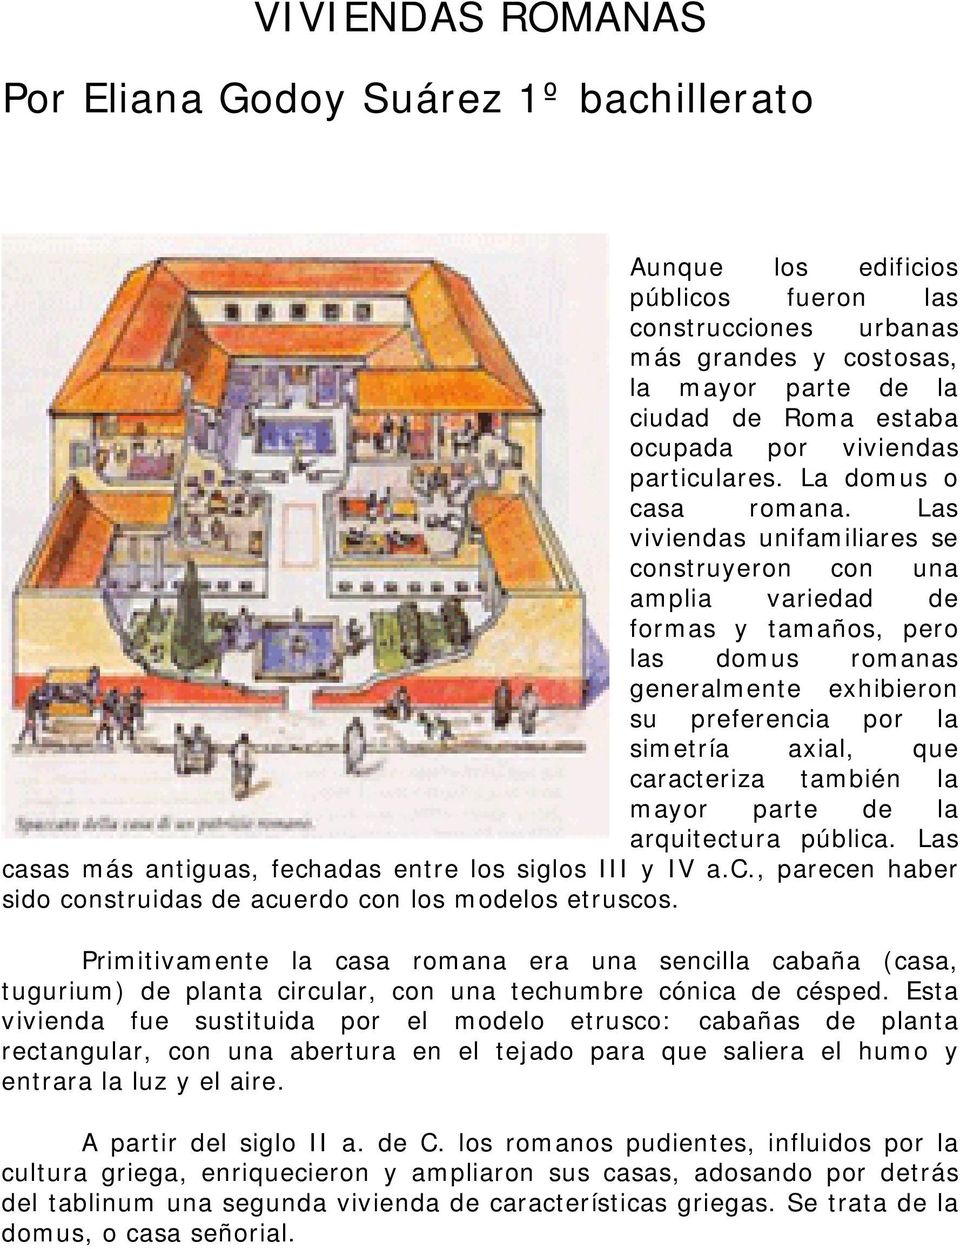 Las viviendas unifamiliares se construyeron con una amplia variedad de formas y tamaños, pero las domus romanas generalmente exhibieron su preferencia por la simetría axial, que caracteriza también